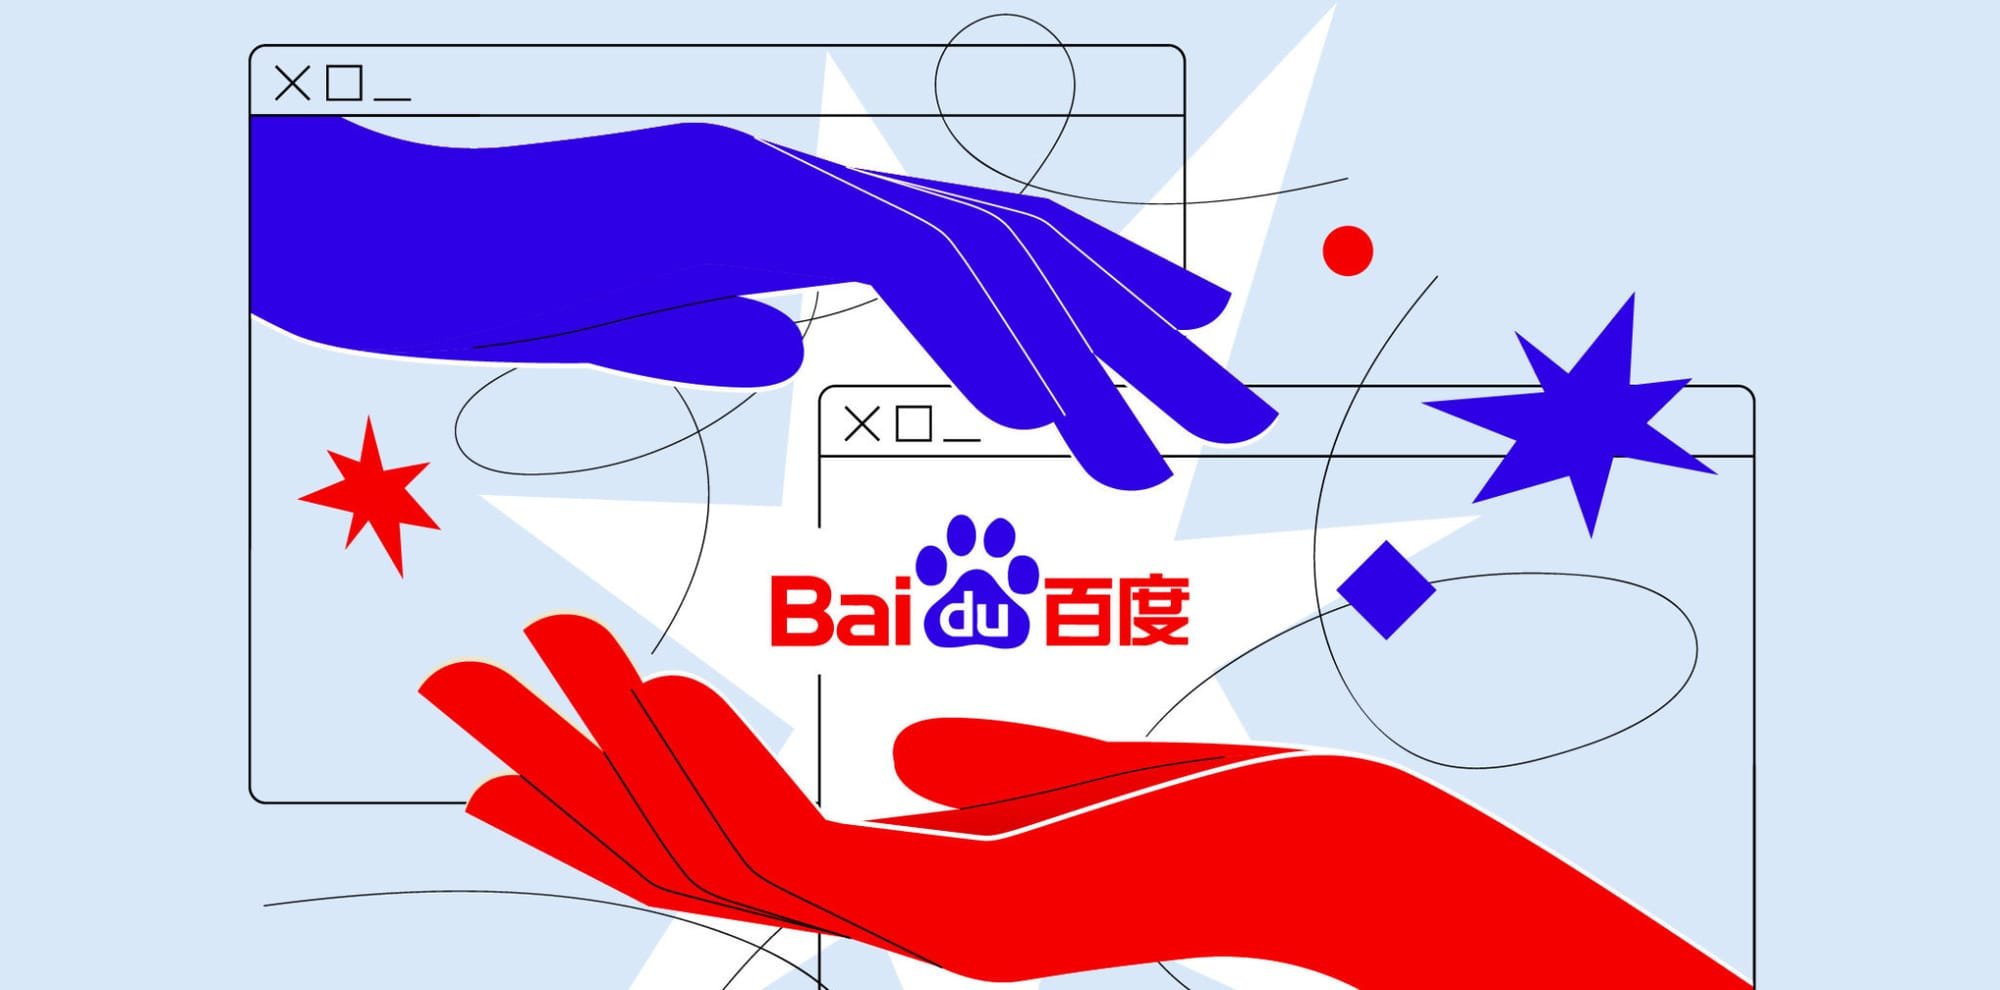 Baidu joins metaverse bandwagon with 'Land of Hope',